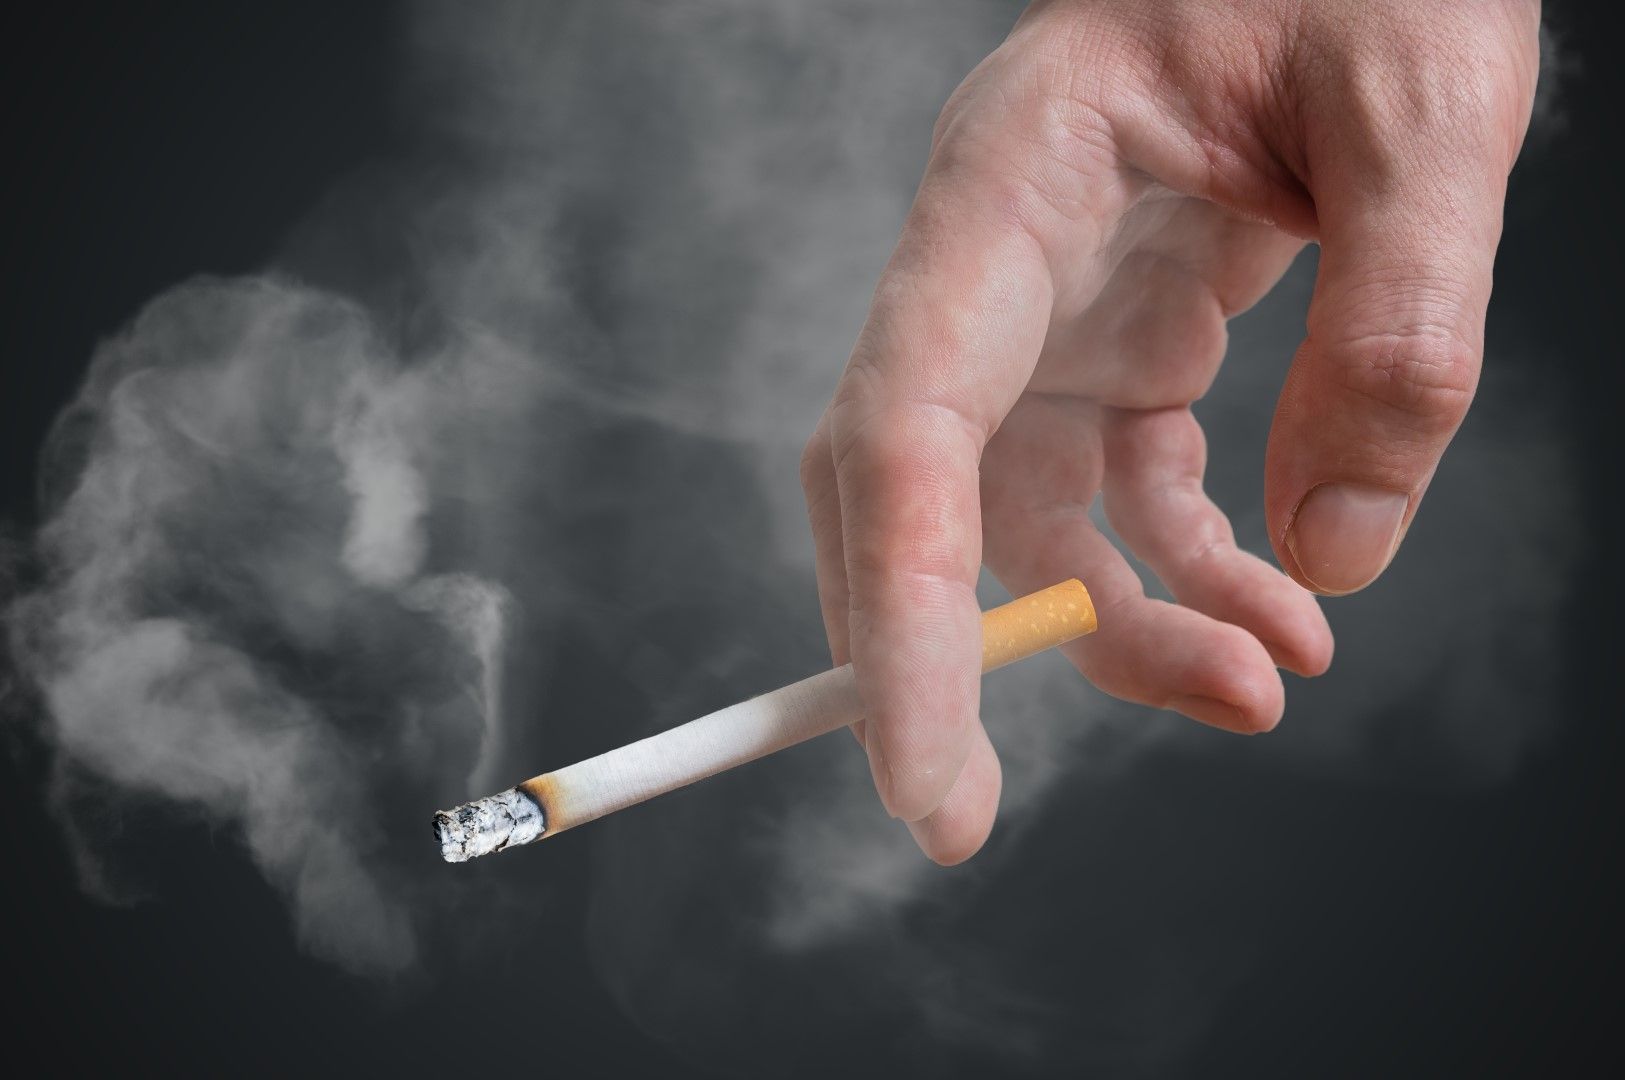 Доказаната връзка между тютюнопушенето и повишената заболеваемост и смъртност е причина за високата стойност на акцизите именно при цигарите